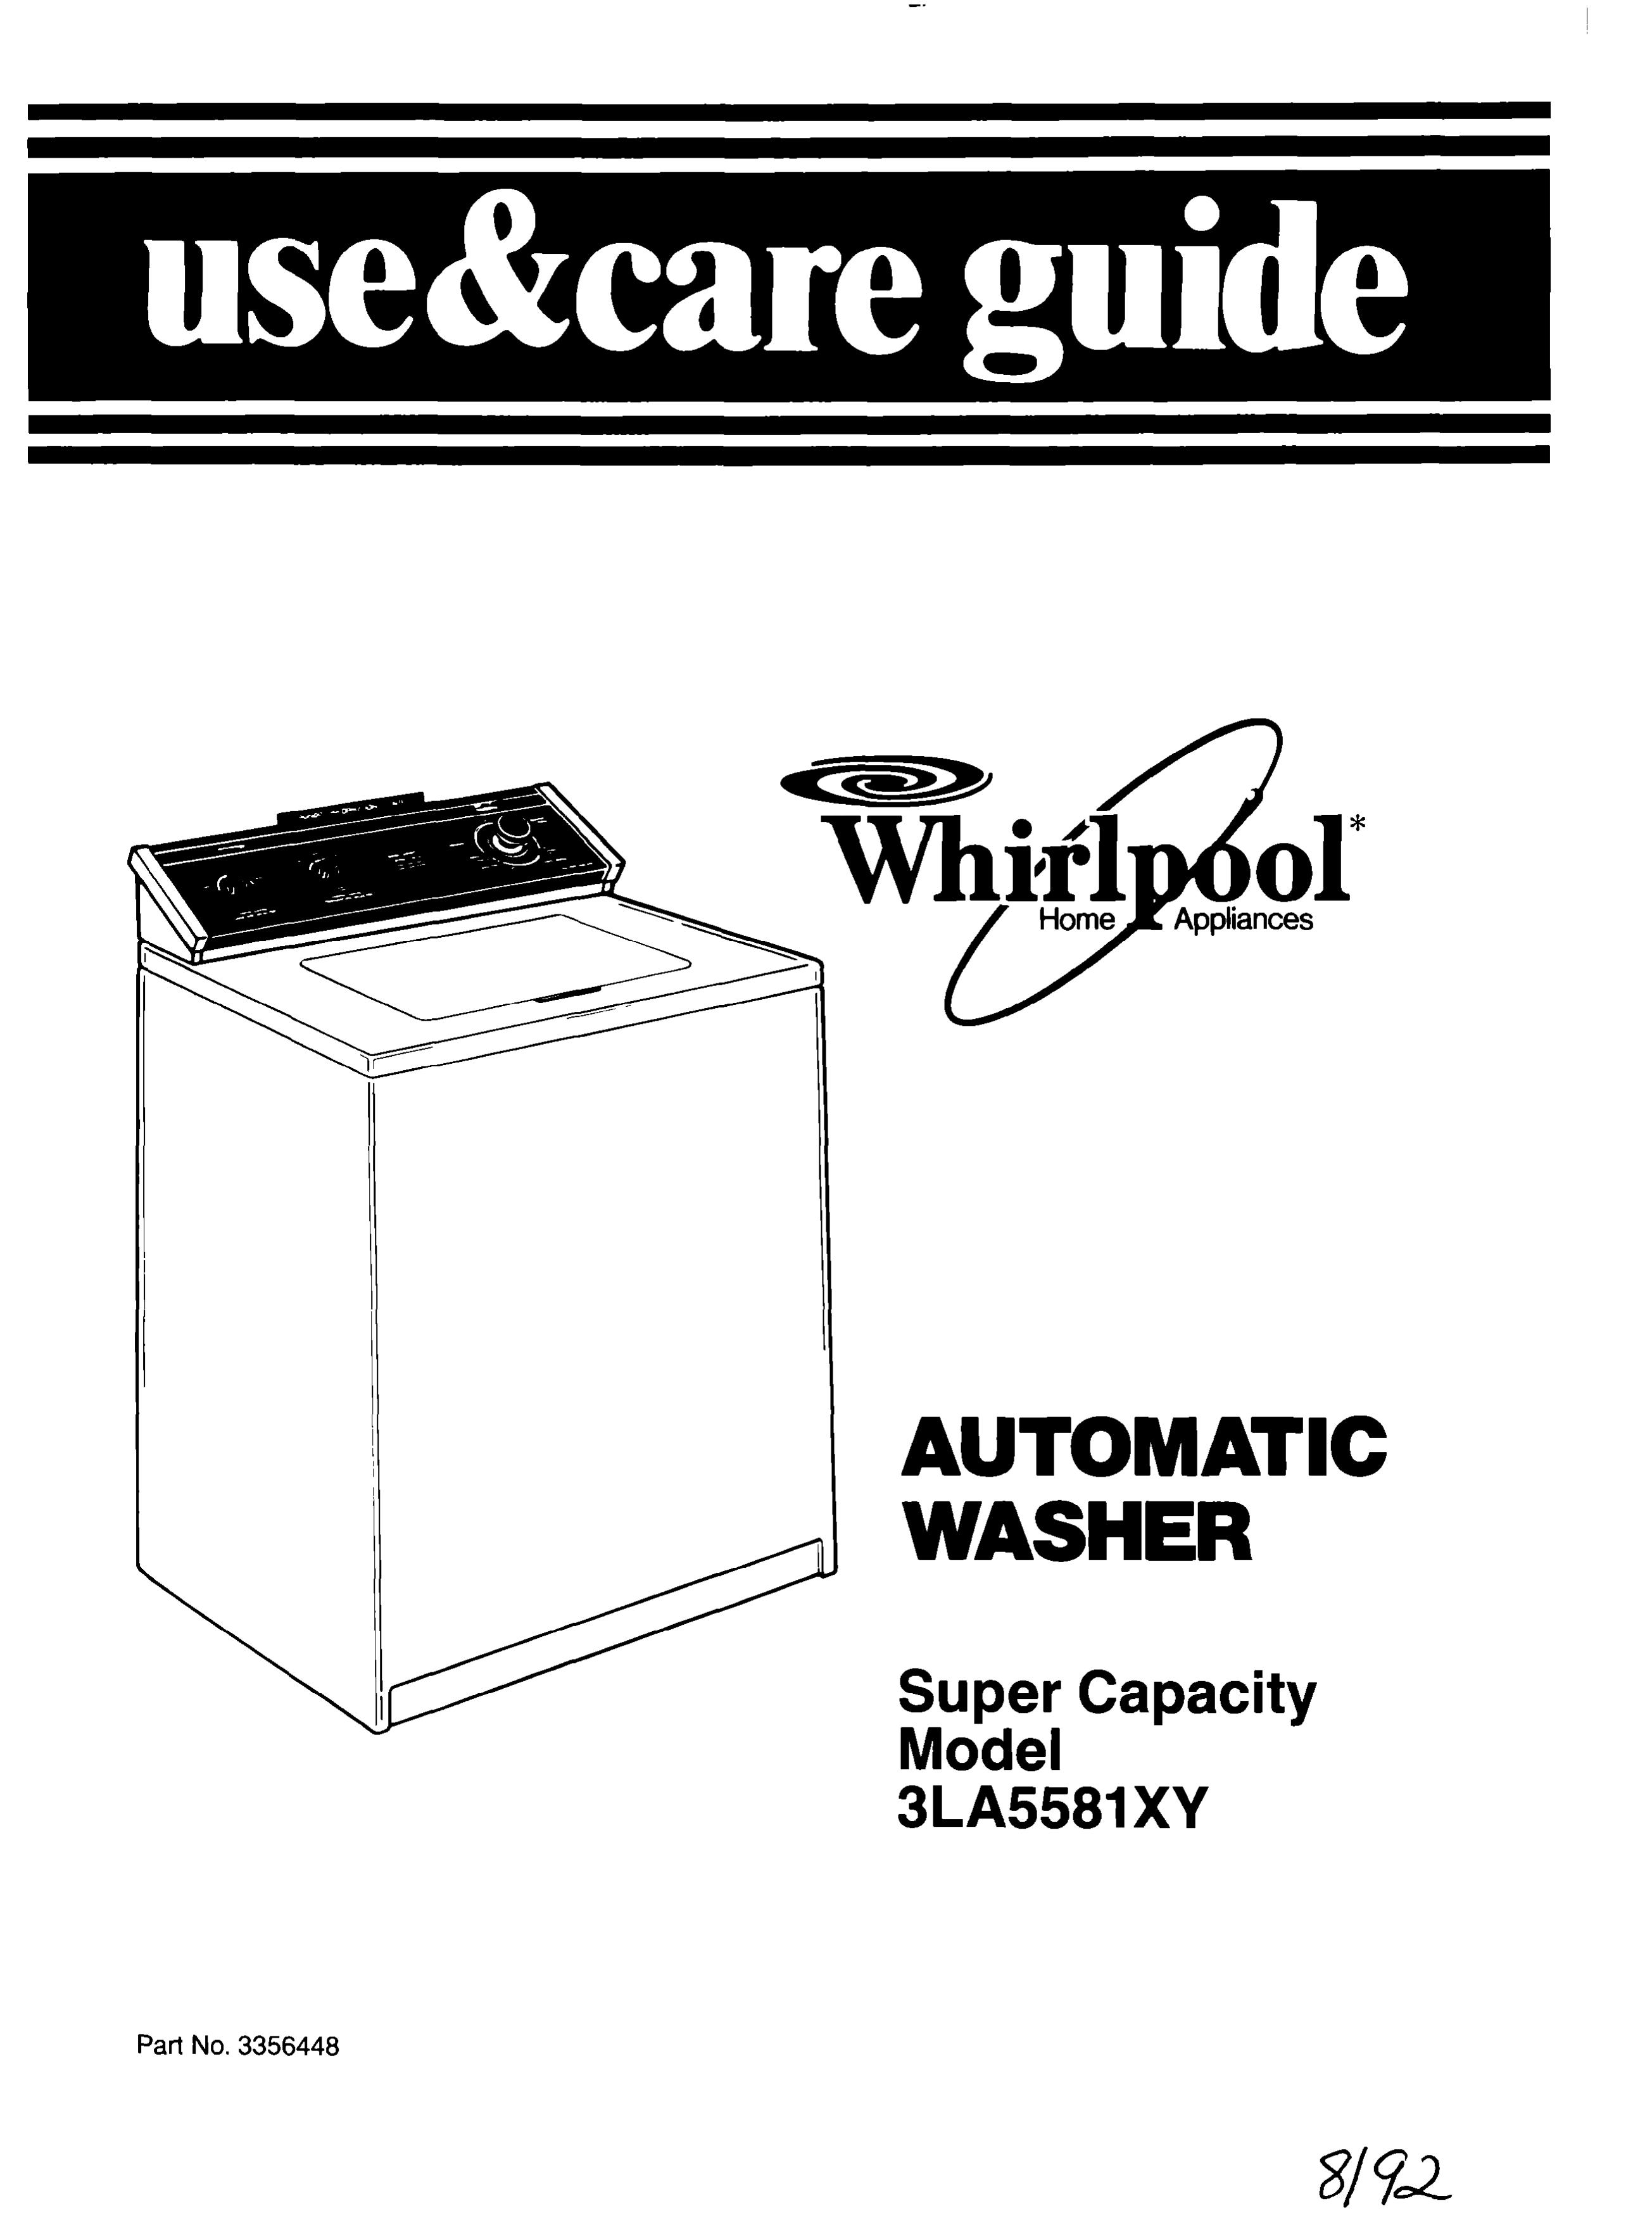 Whirlpool 3LA5581 Washer User Manual